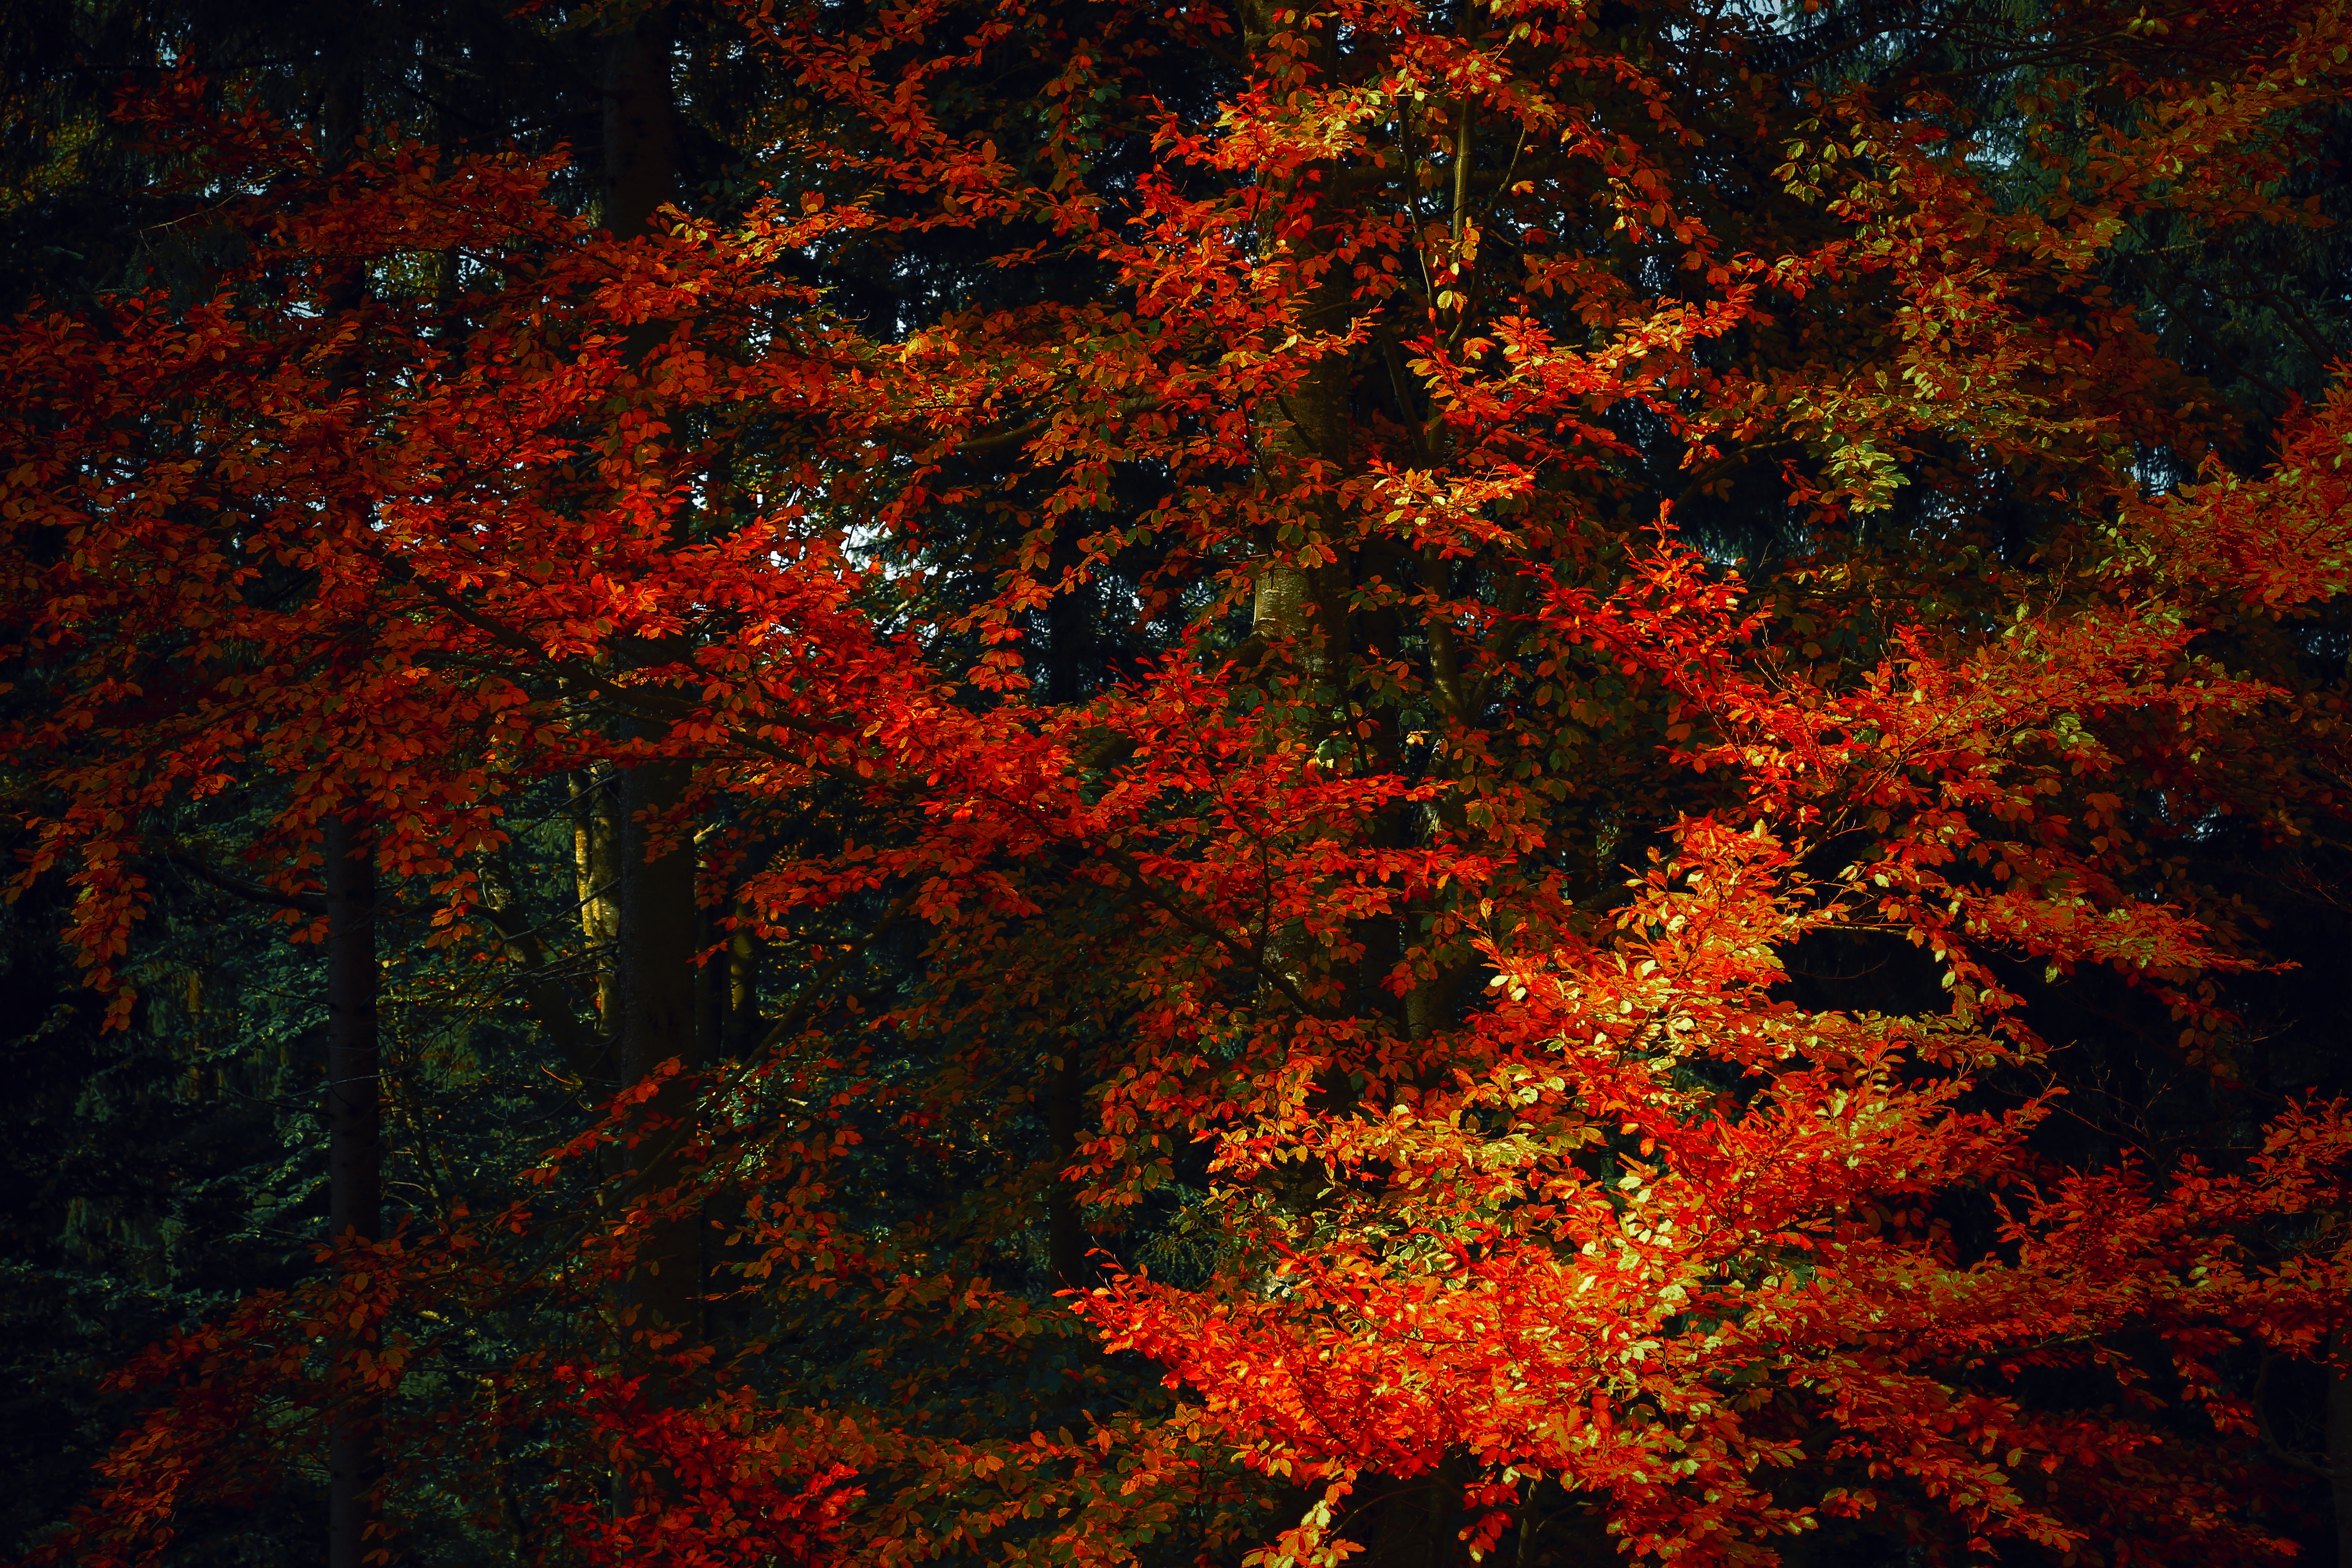 shadows, leaves, autumn paints, nature, trees, autumn, branches, autumn colors cellphone